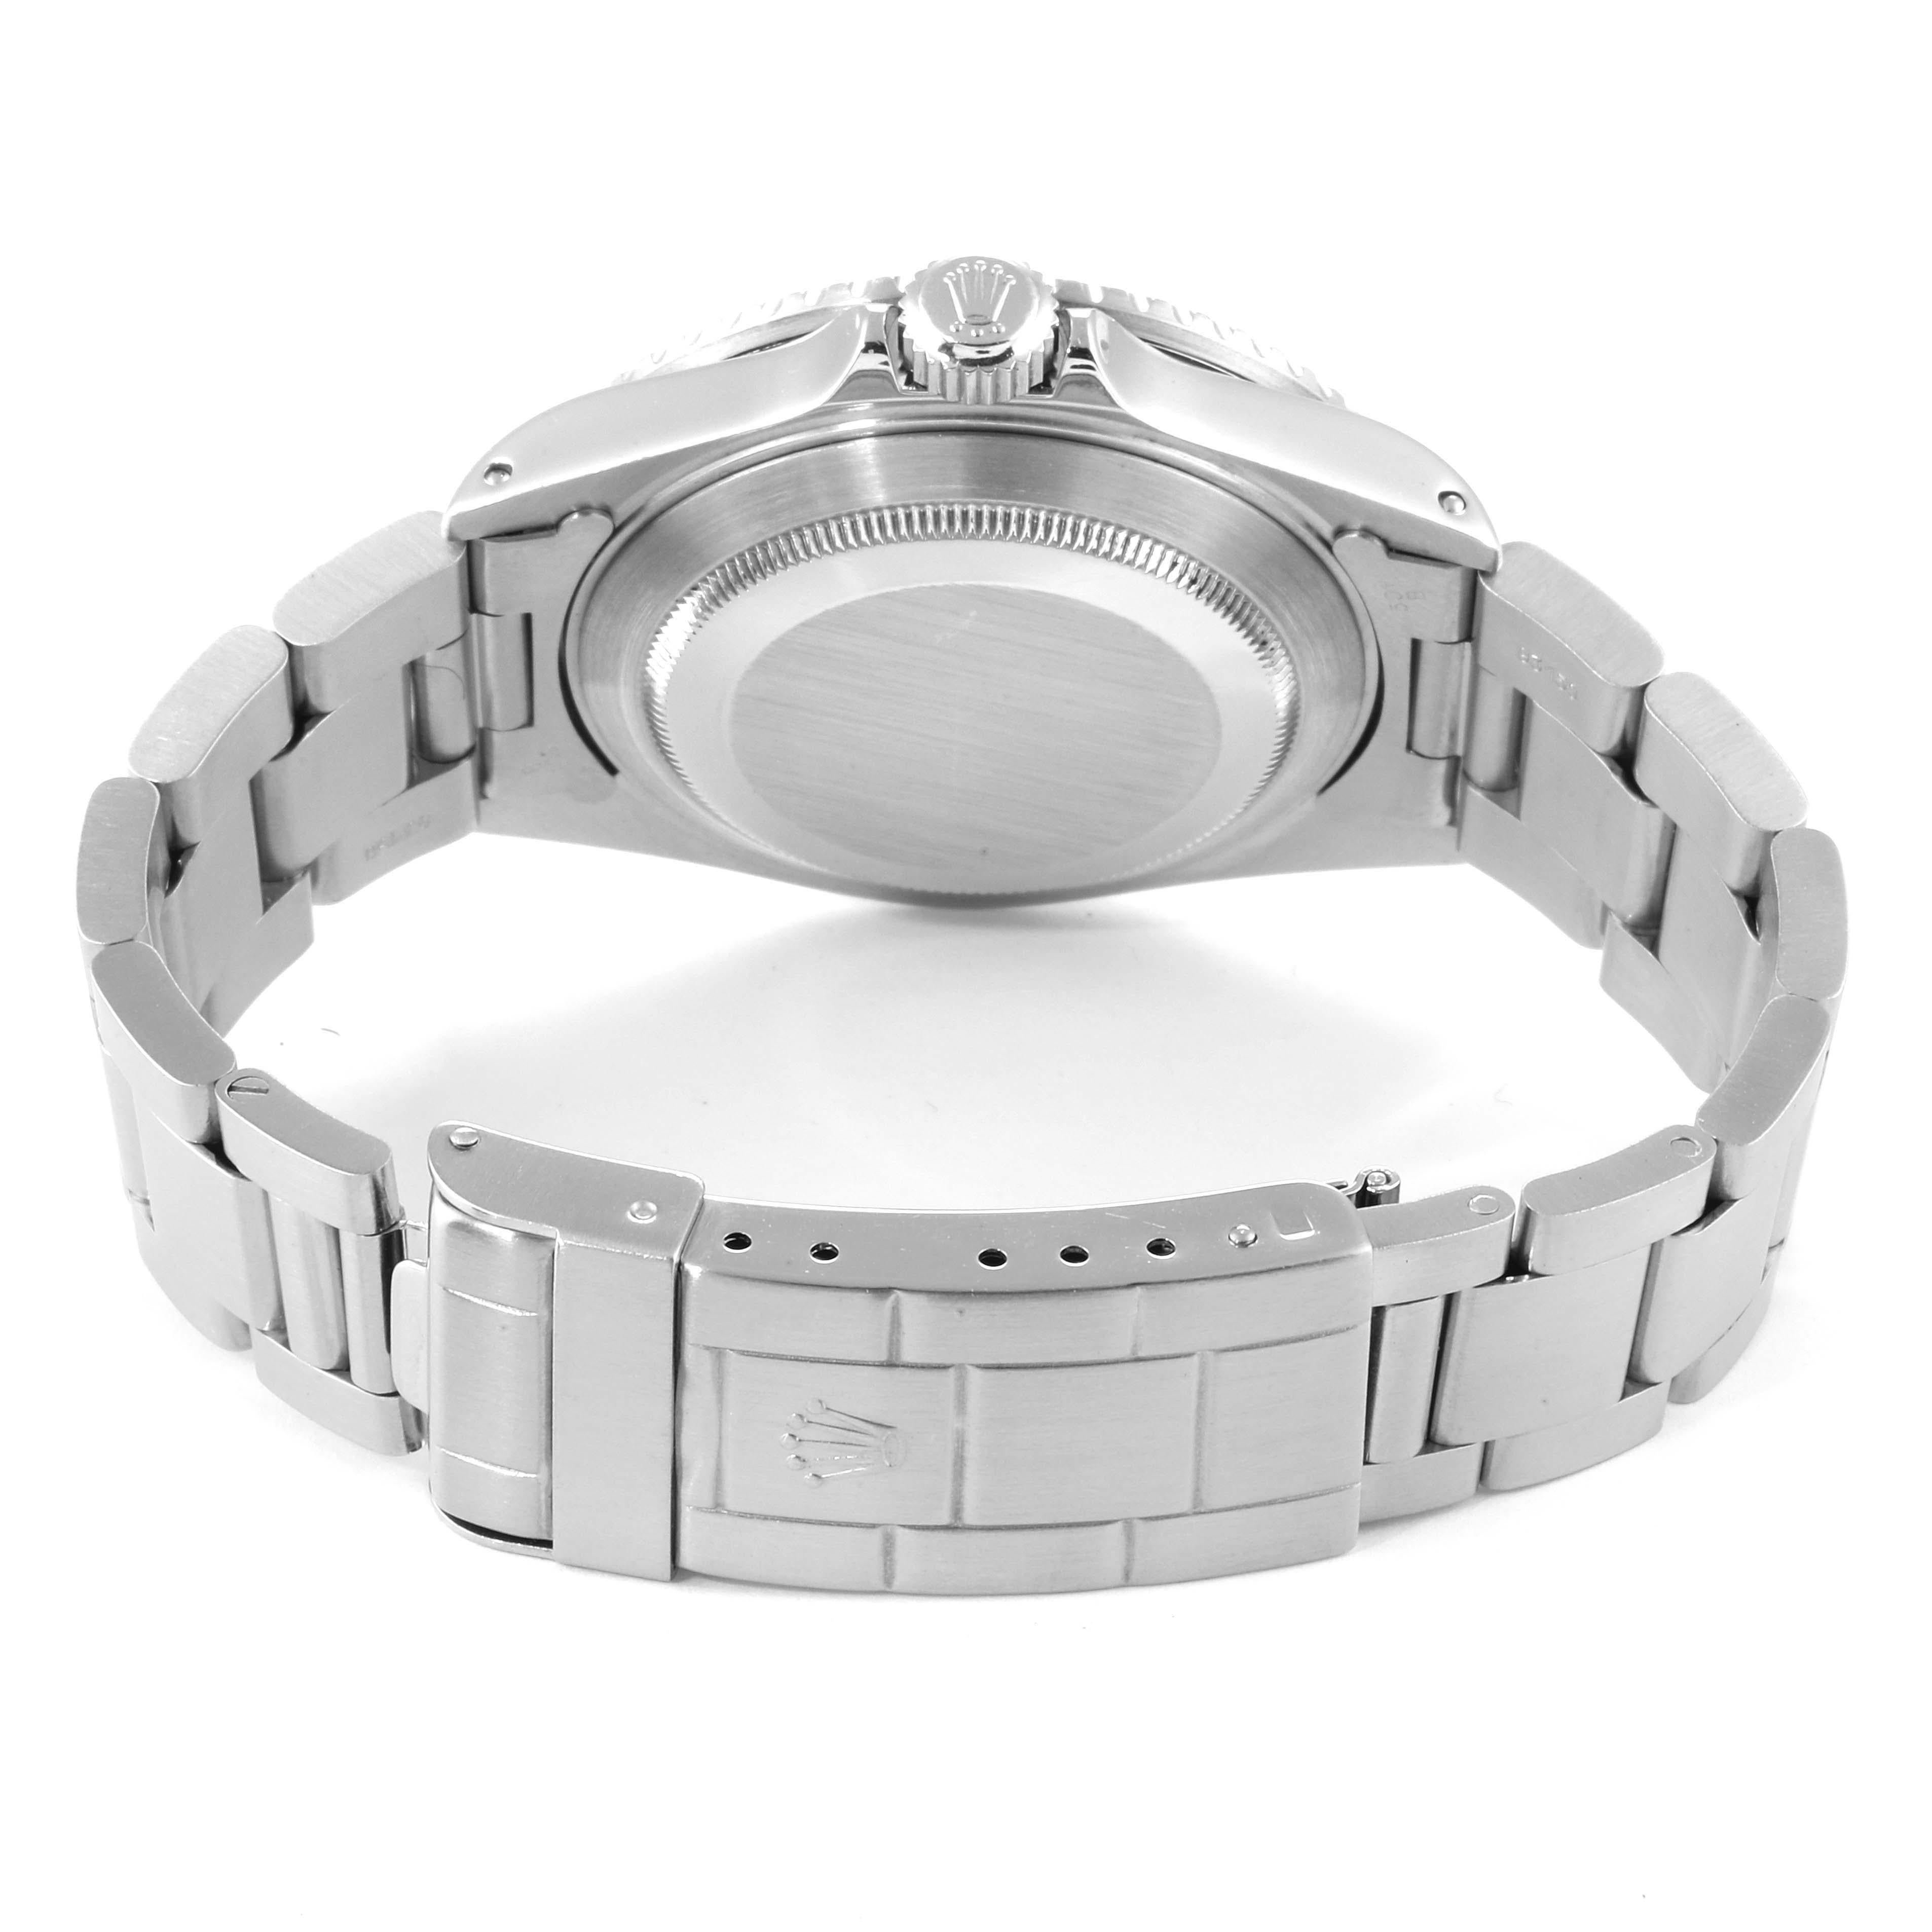 Rolex Submariner Date Stainless Steel Men's Watch 16610 6